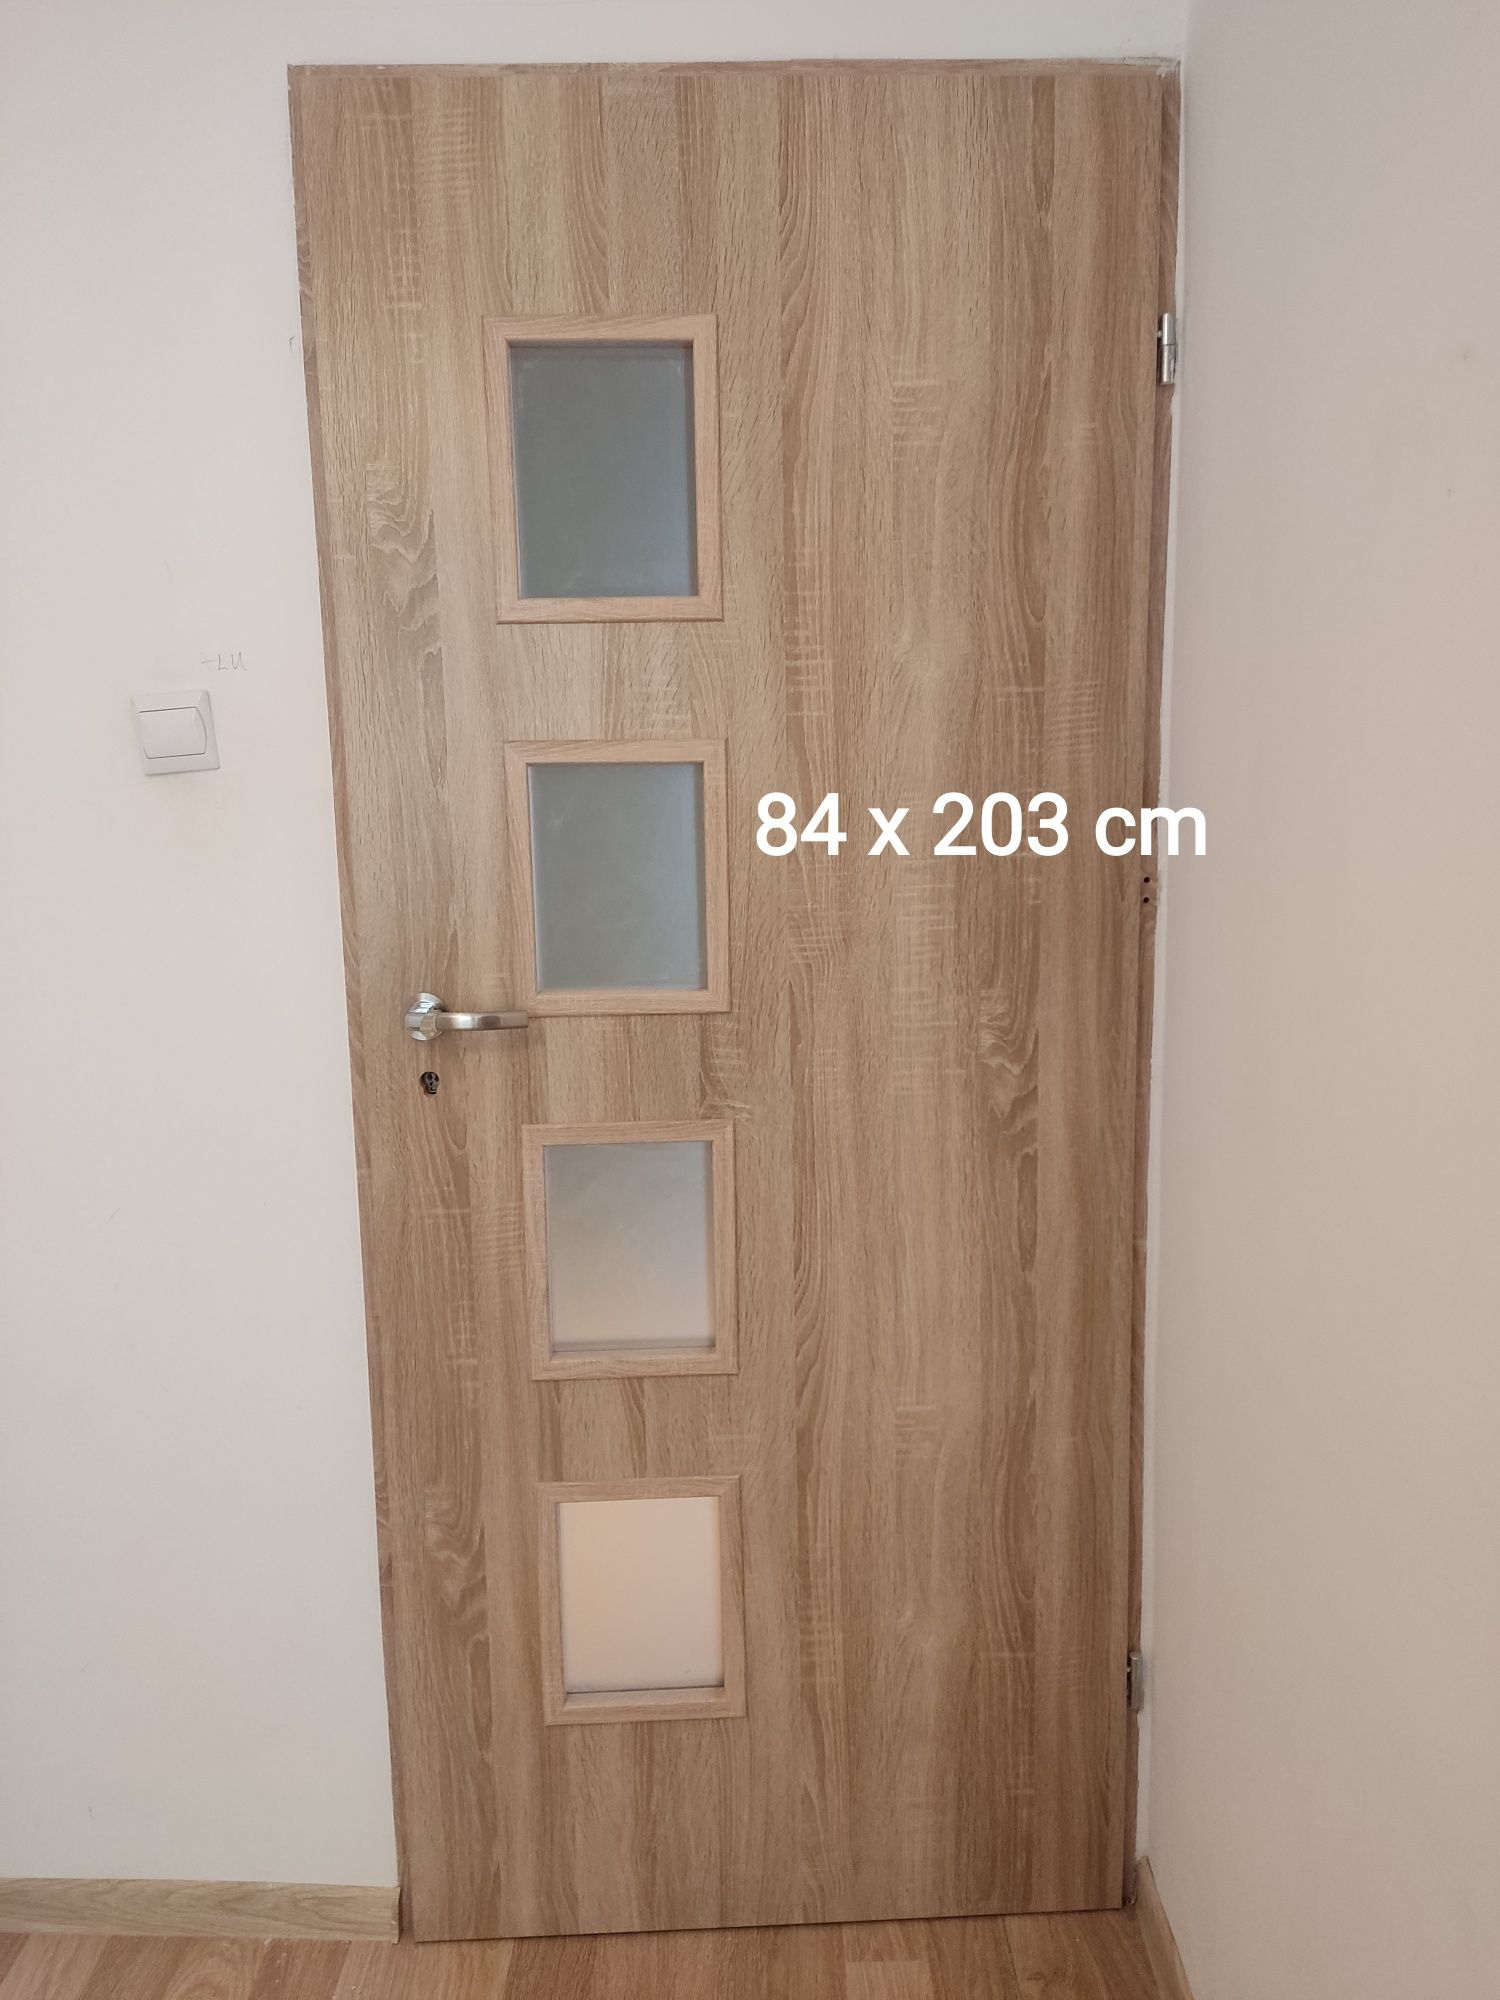 Drzwi wewnętrzne pokojowe 84x203 cm używane 2 sztuki prawe